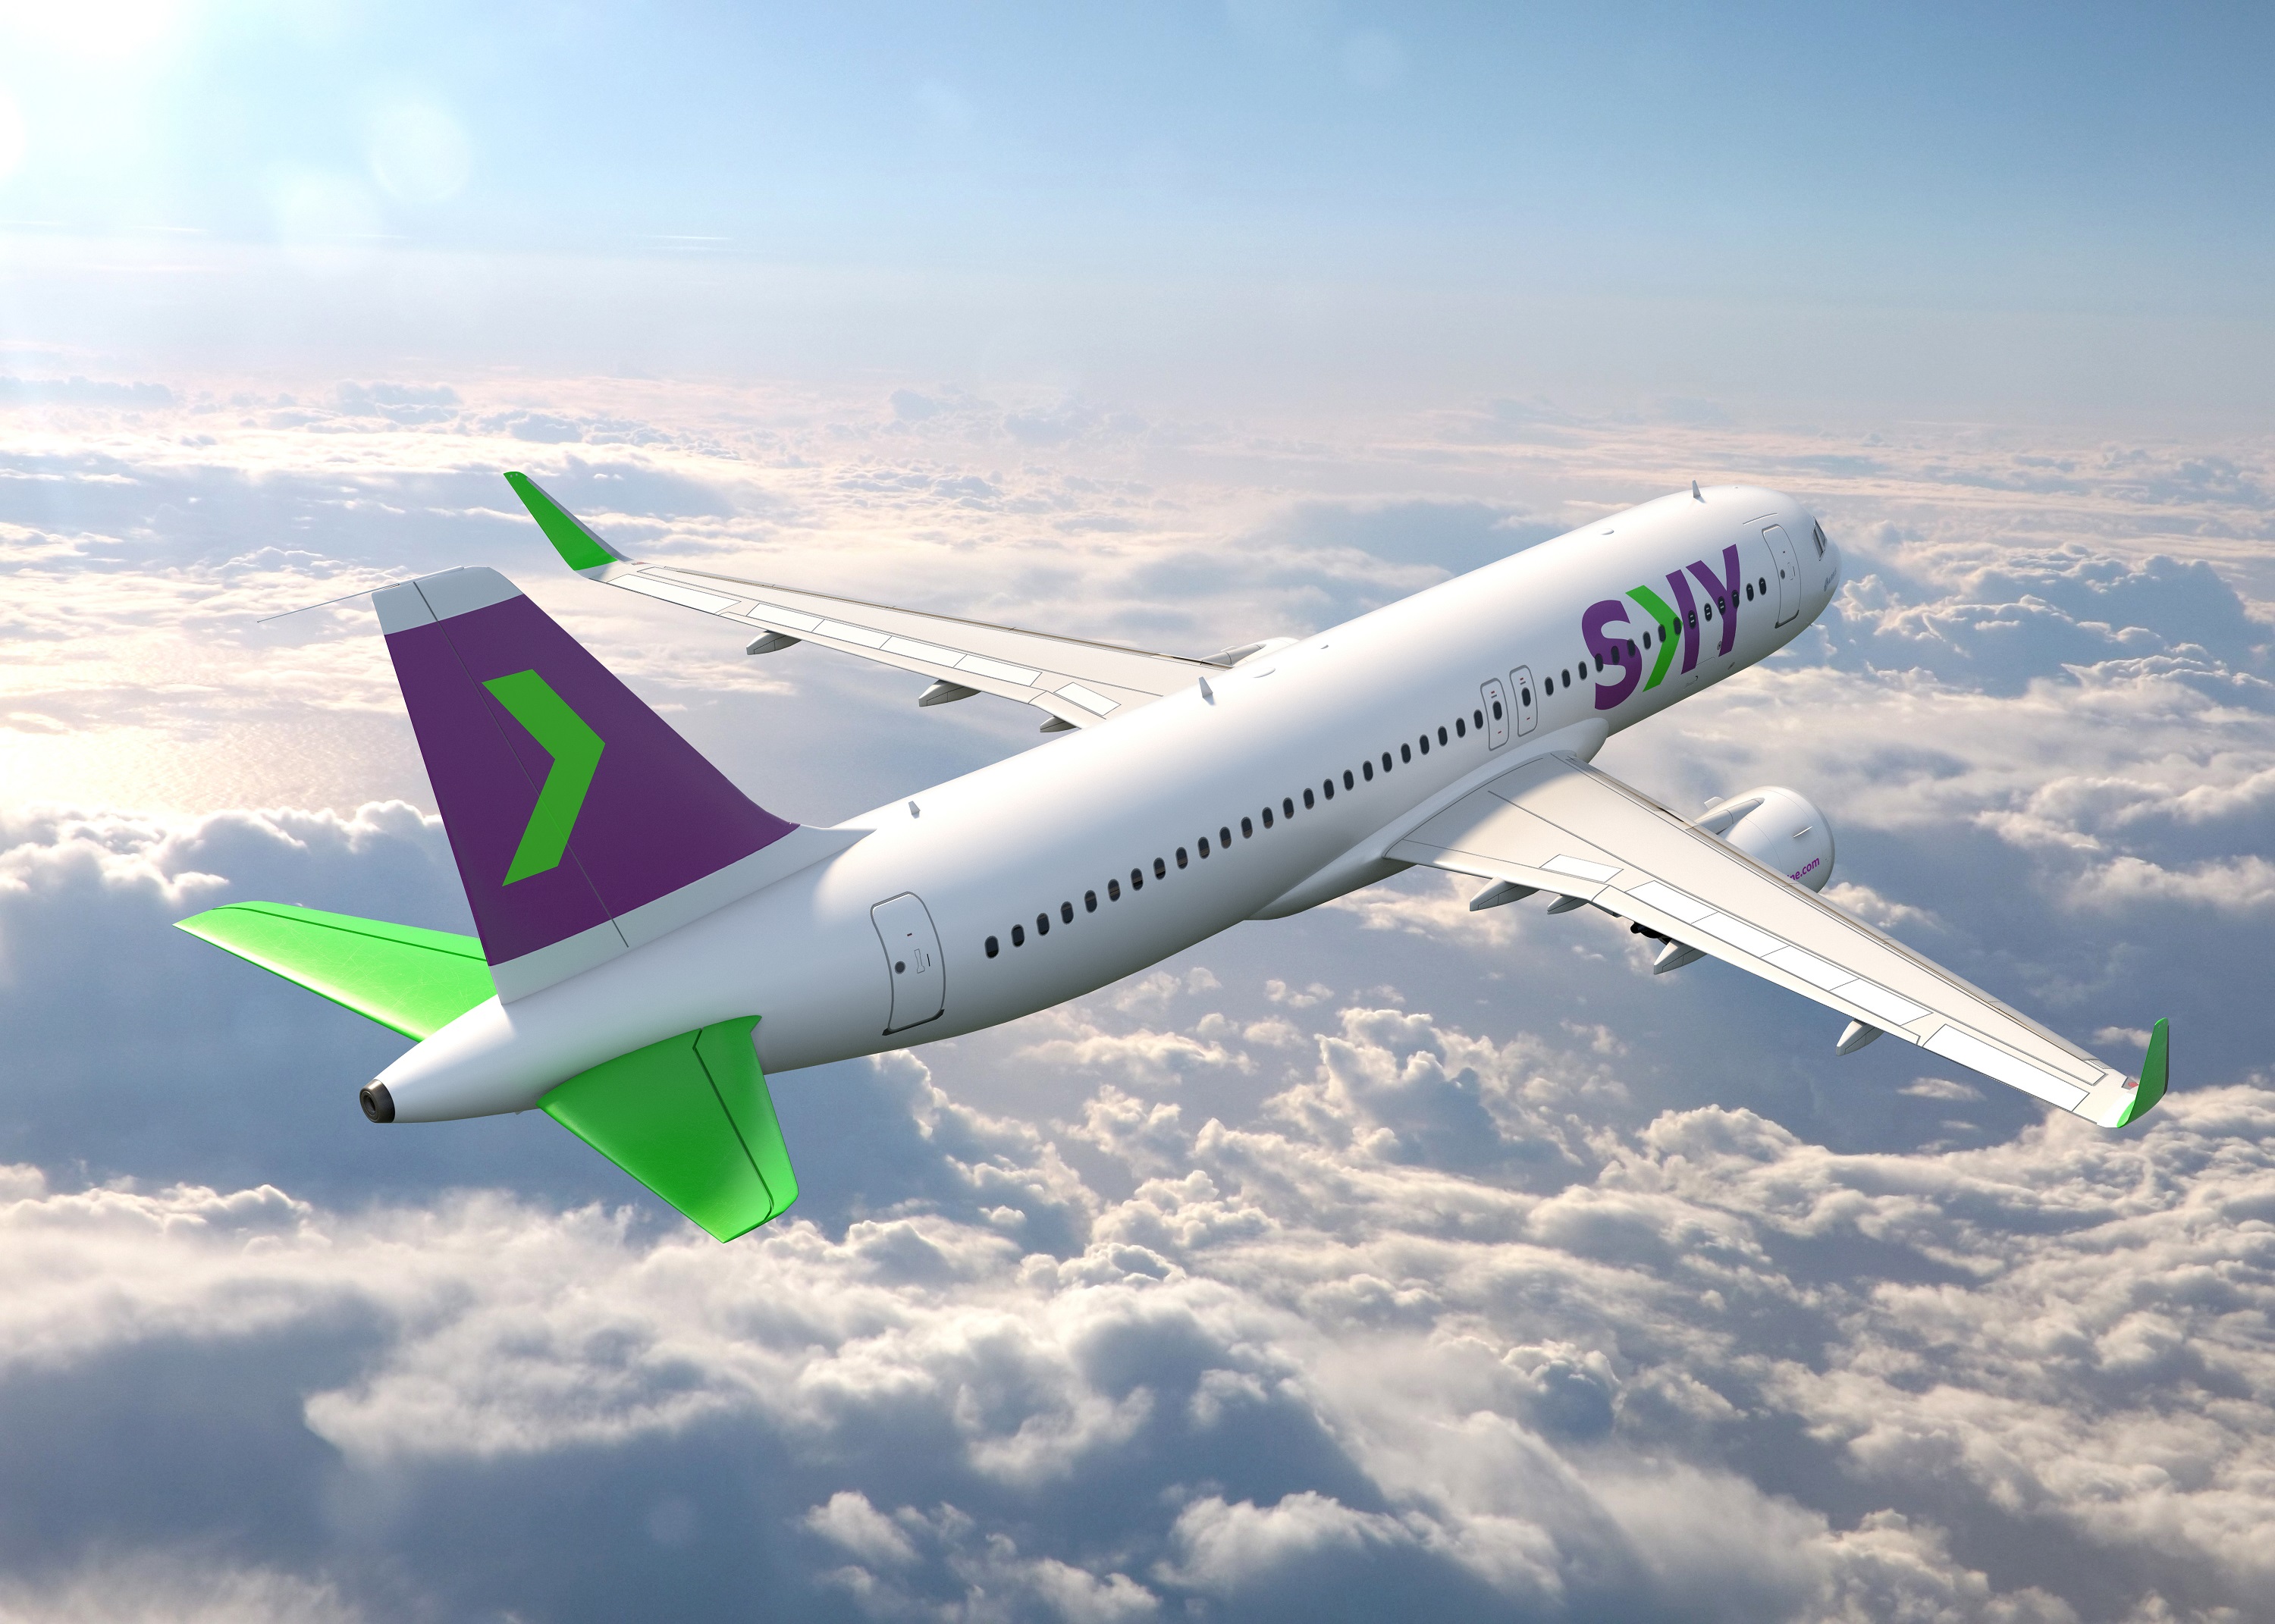 La linea aerea SKY presenta nuevos servicios para su version LOW COST